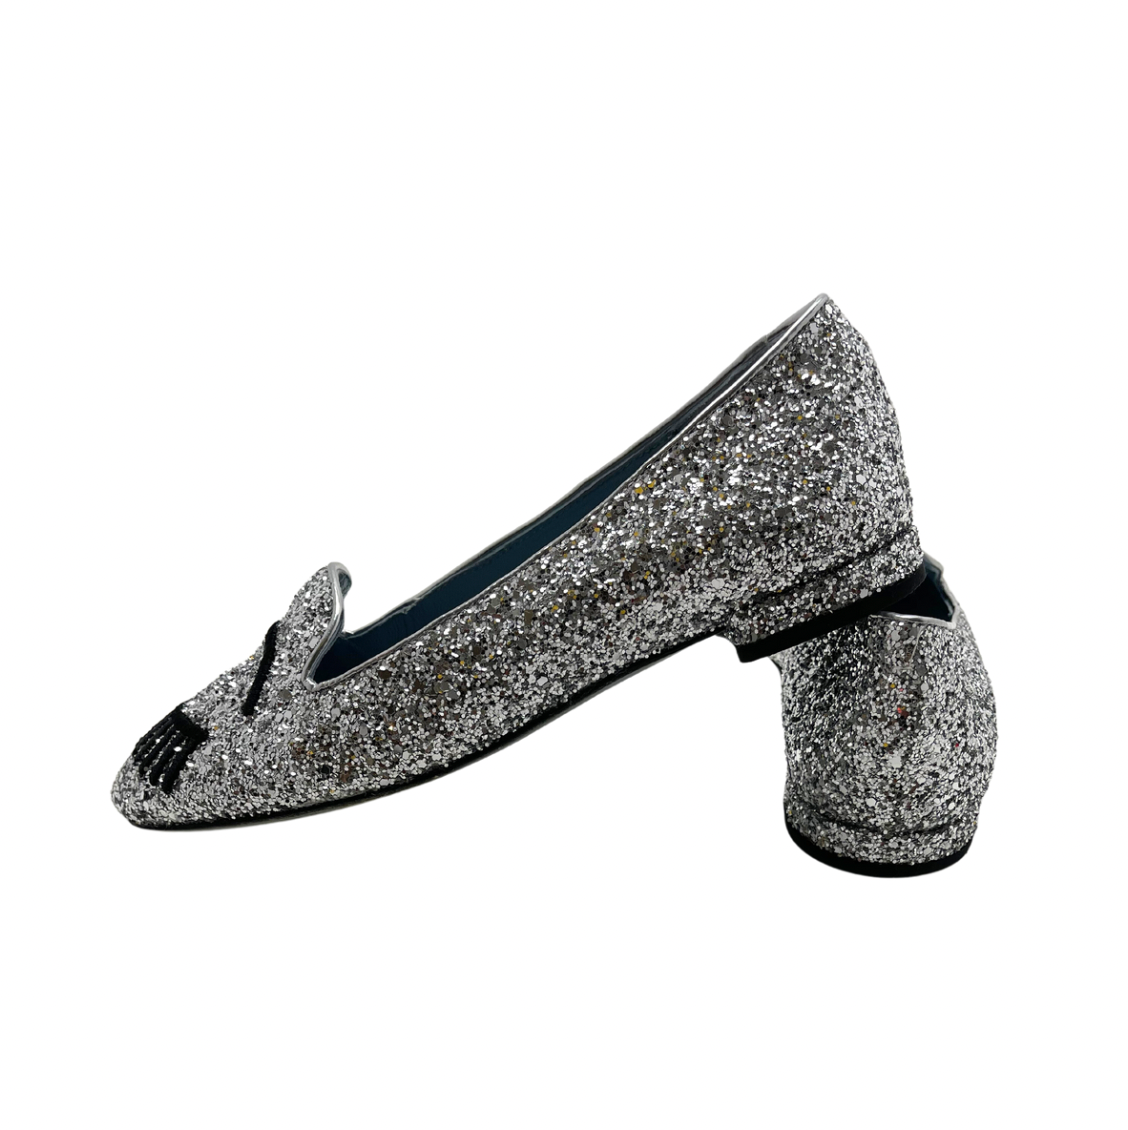 CHIARA FERRAGNI - Silver loafers - 35